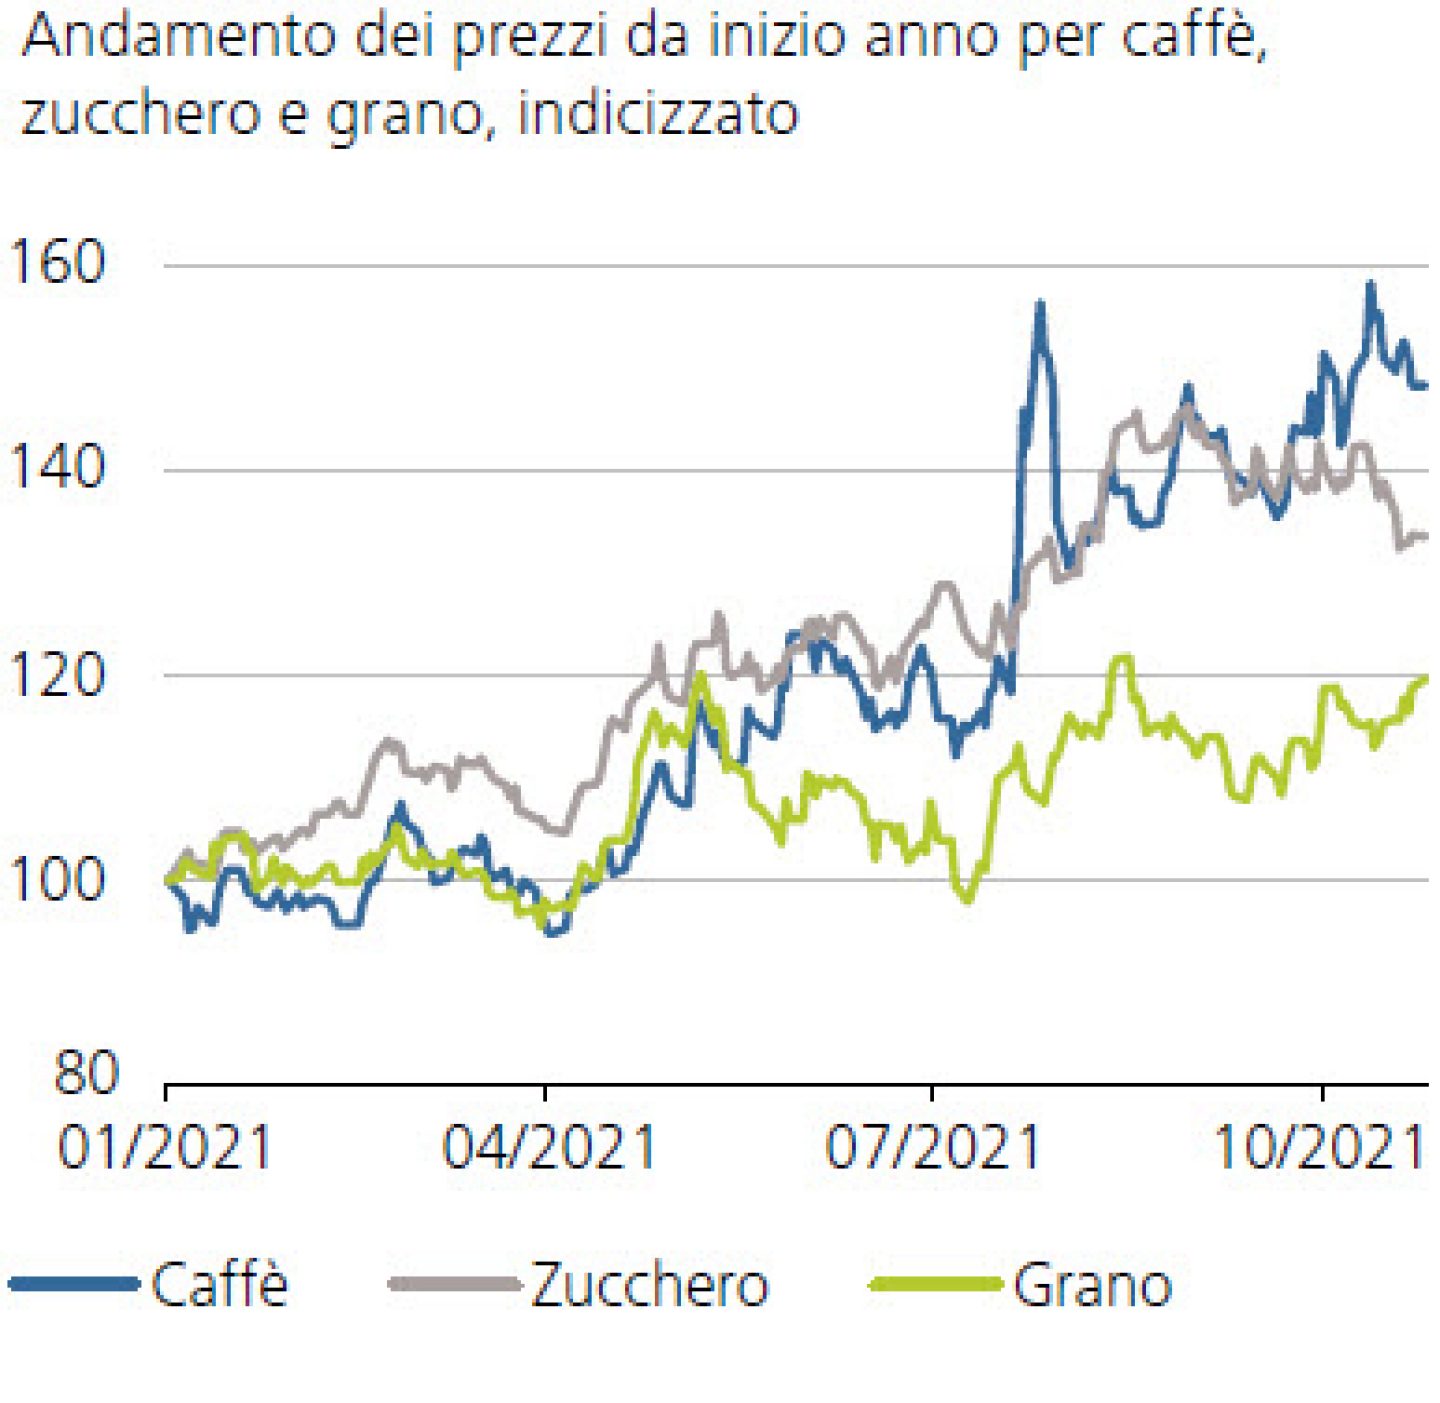 Andamento dei prezzi da inizio anno per caffè, zucchero e grano, indicizzato 